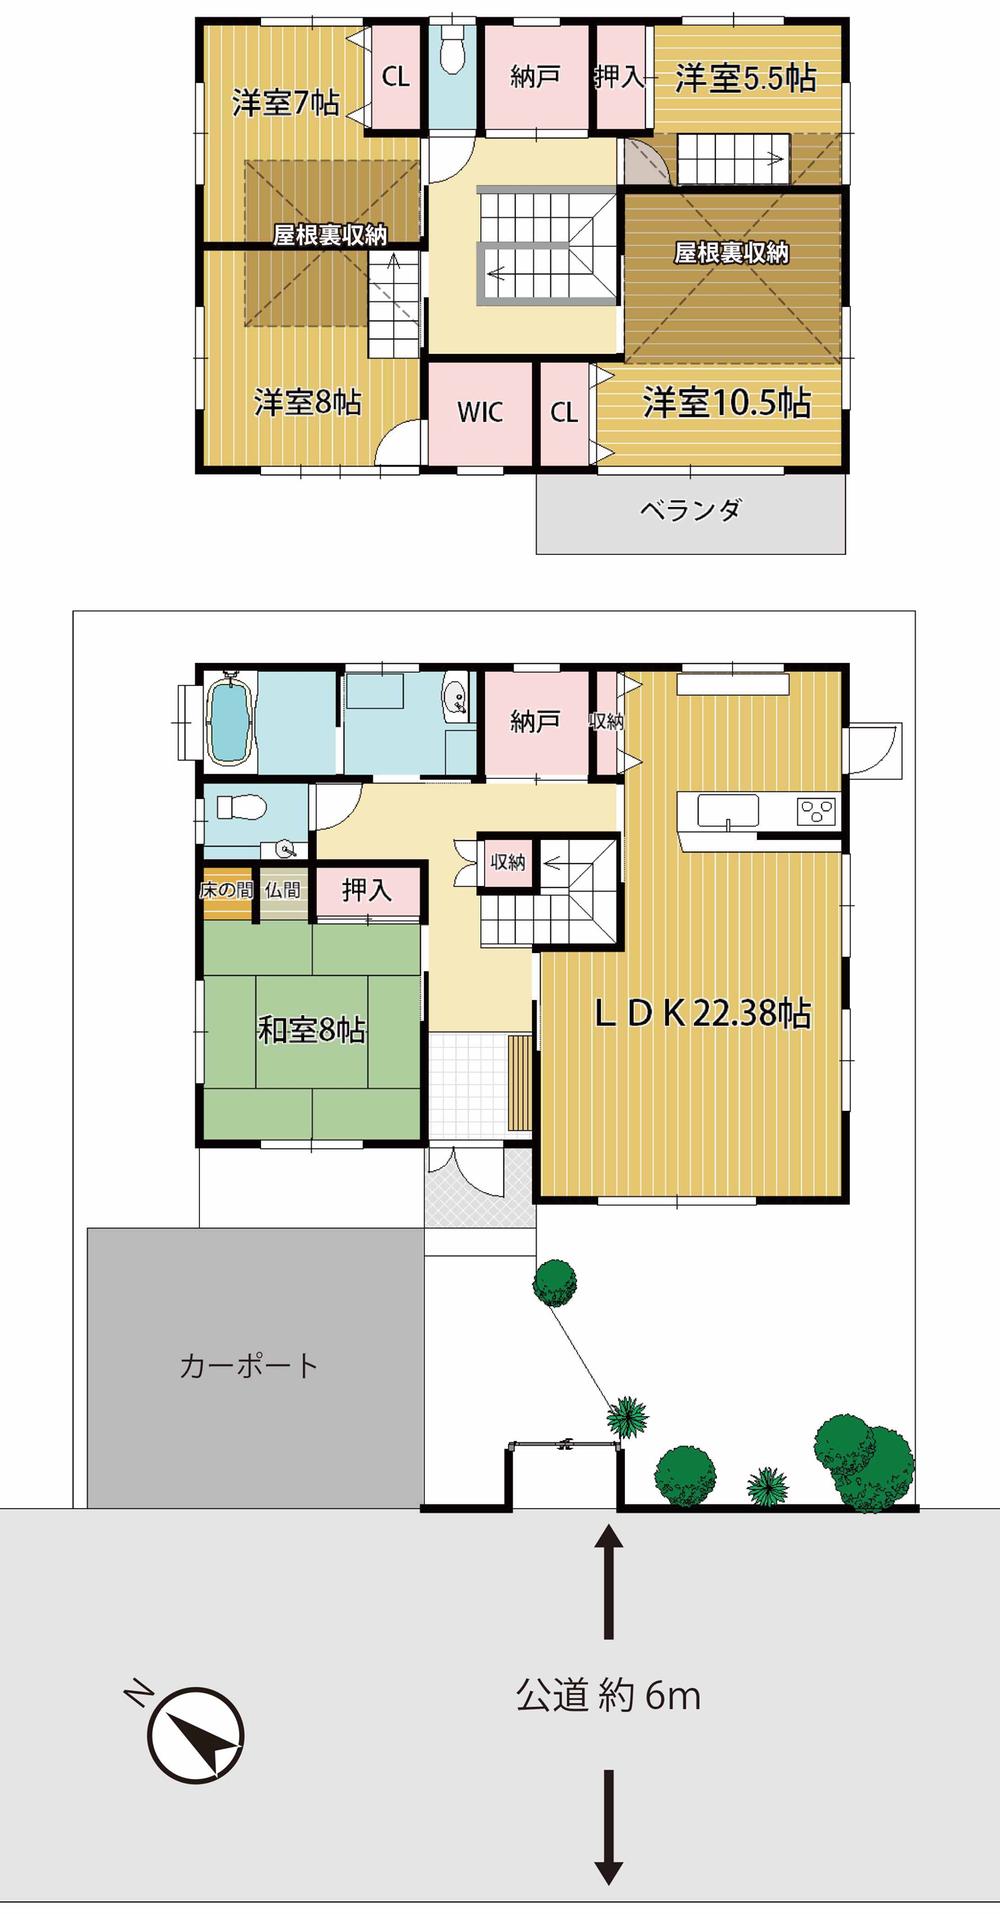 Floor plan. 45,800,000 yen, 5LDK + 2S (storeroom), Land area 205.16 sq m , Building area 161.68 sq m